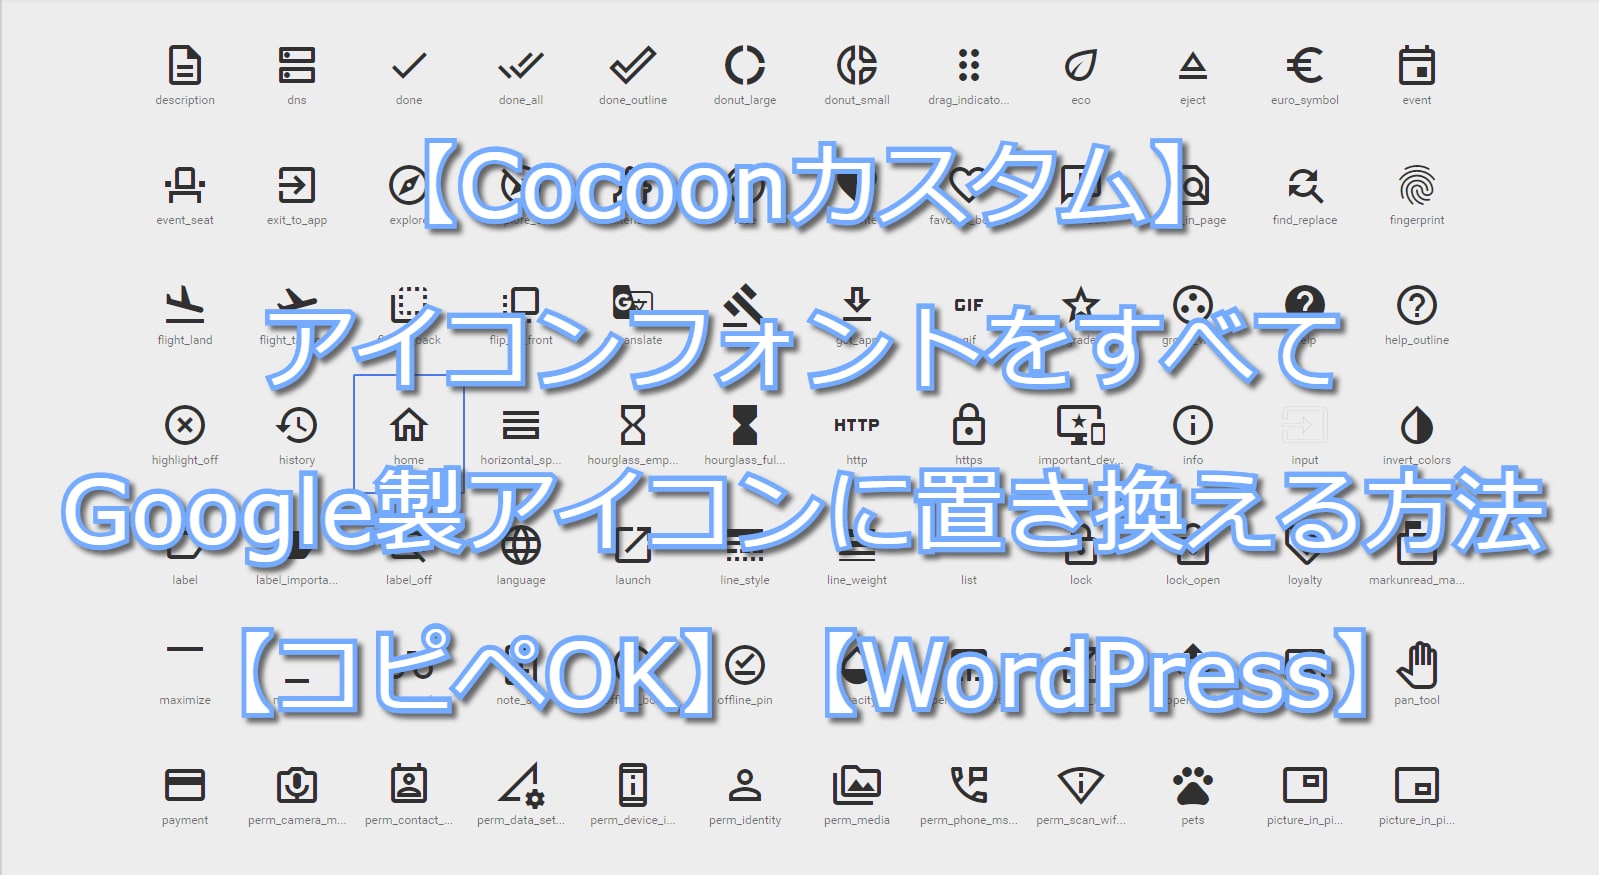 Cocoonカスタム アイコンフォントをすべてgoogle製アイコンに置き換える方法 コピペok Wordpress 社畜アフィリエイト